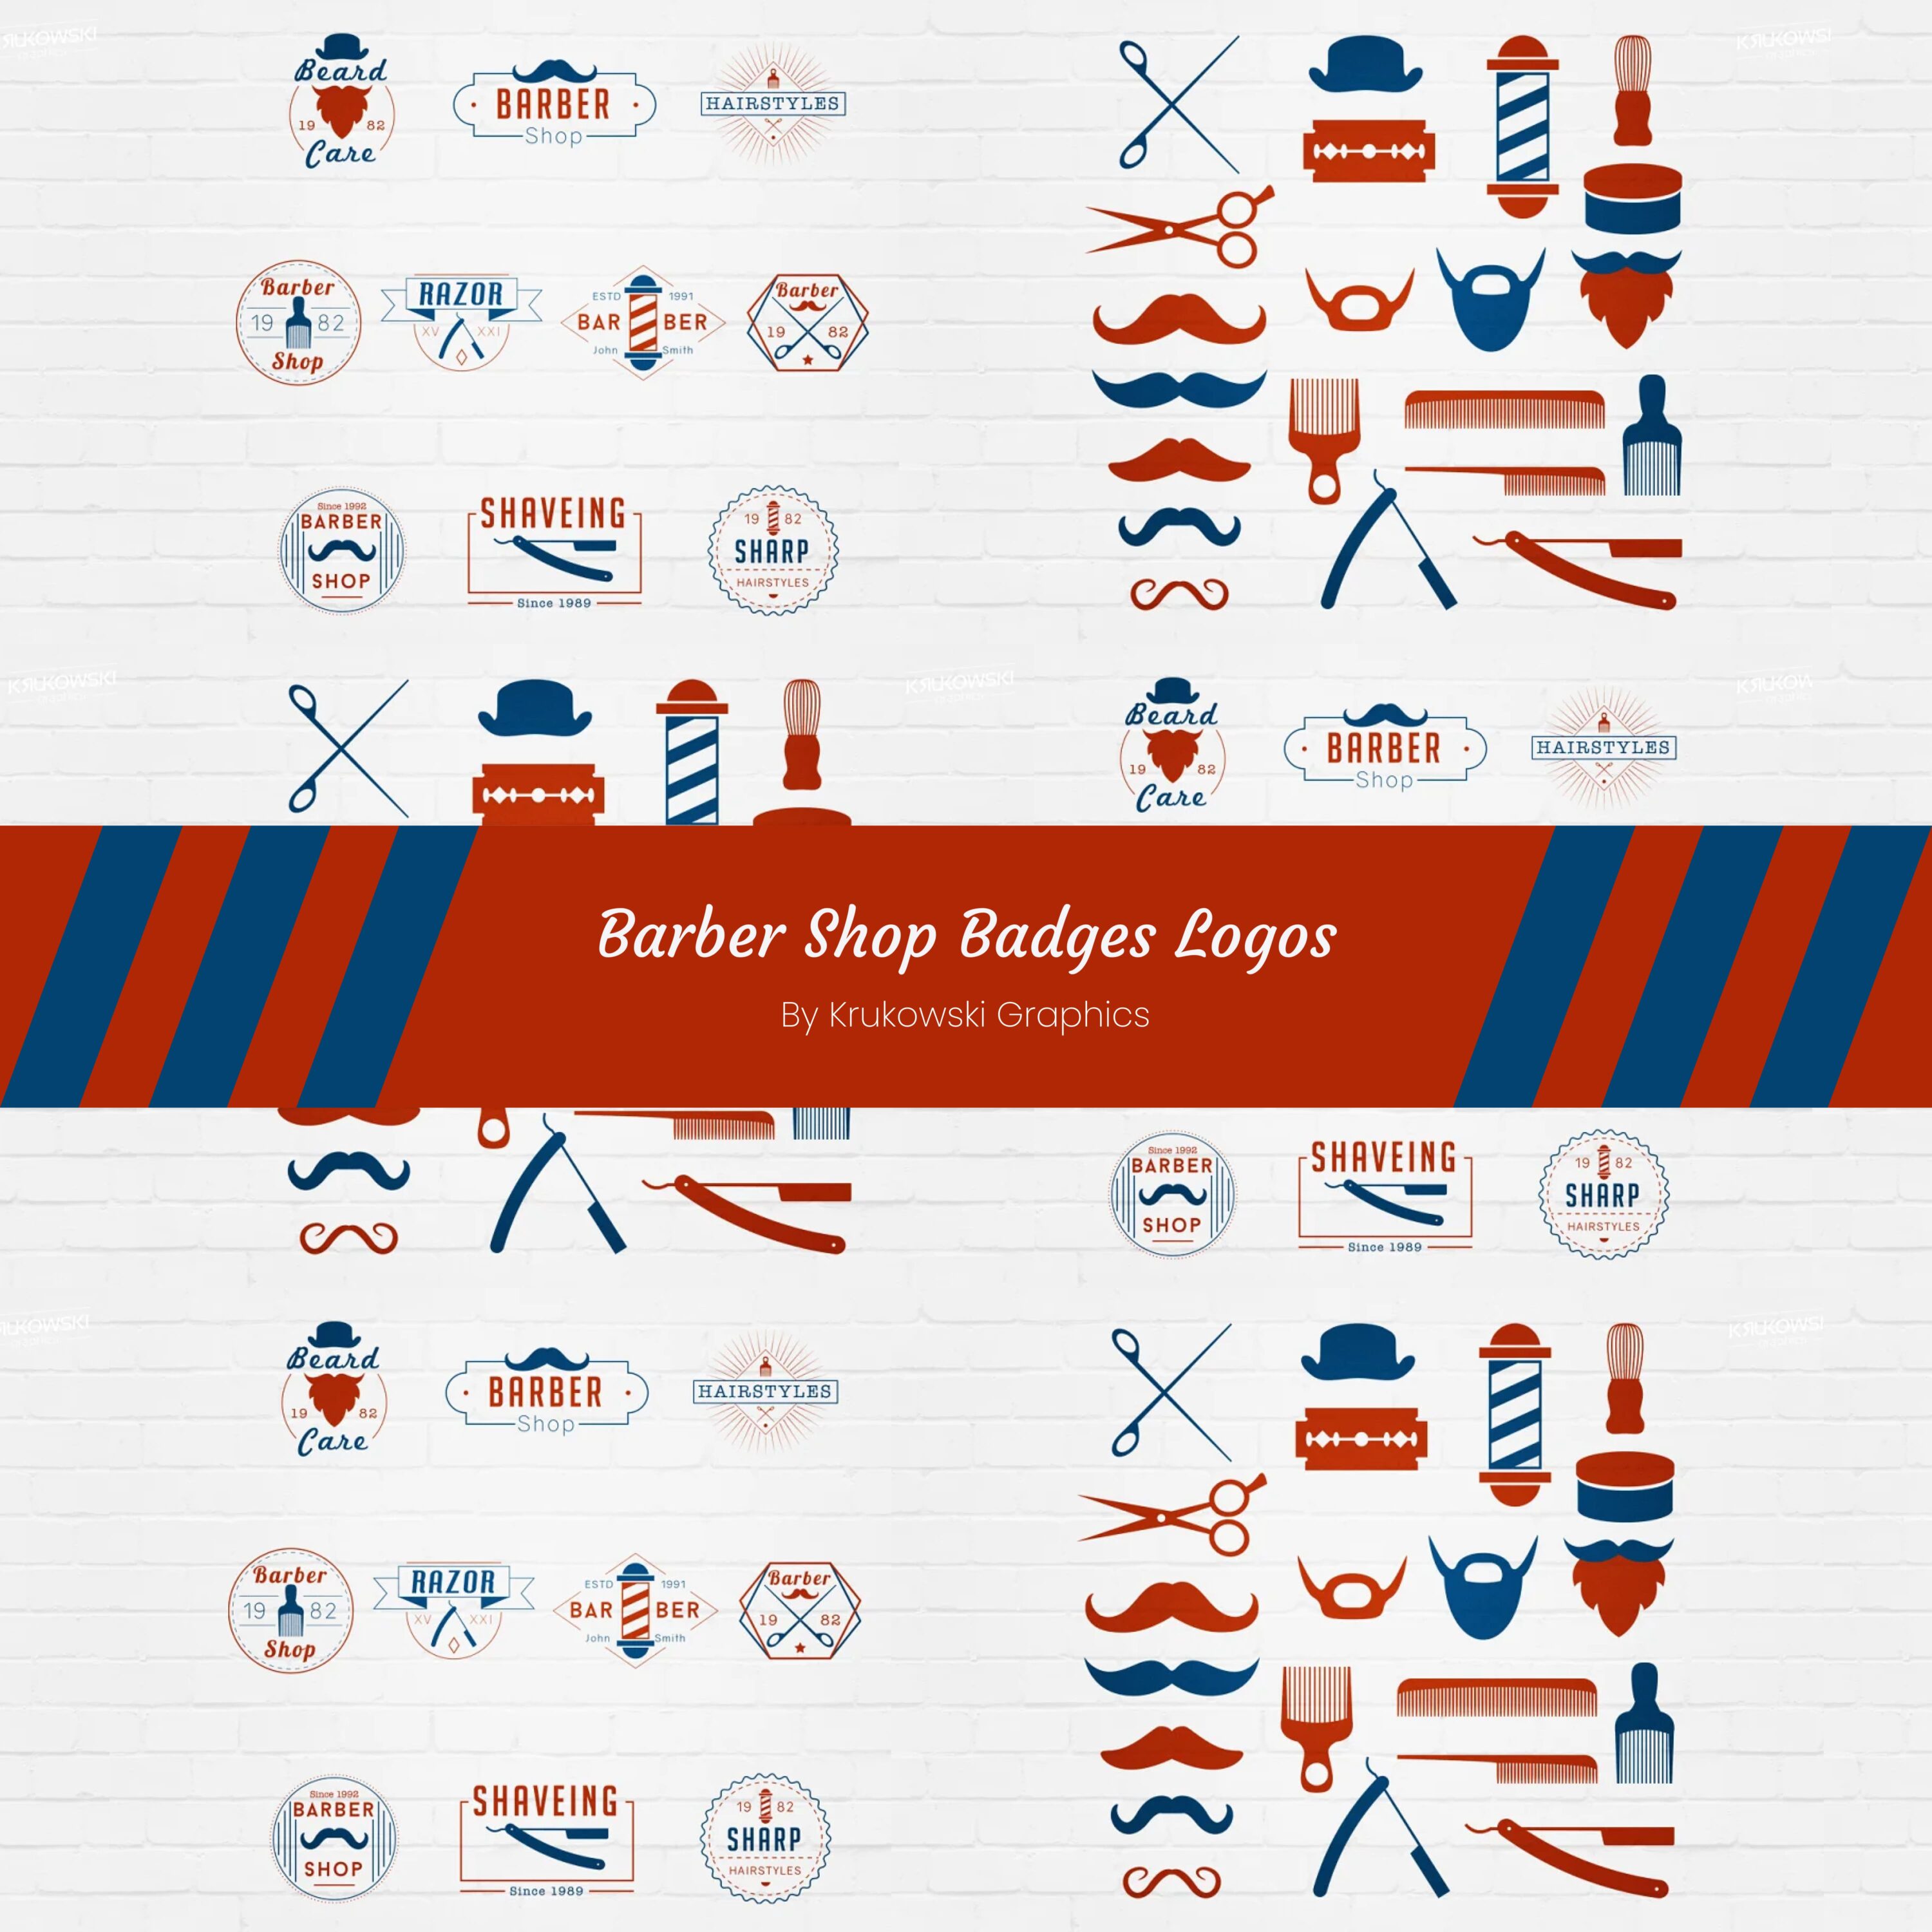 Barber Shop Badges Logos.